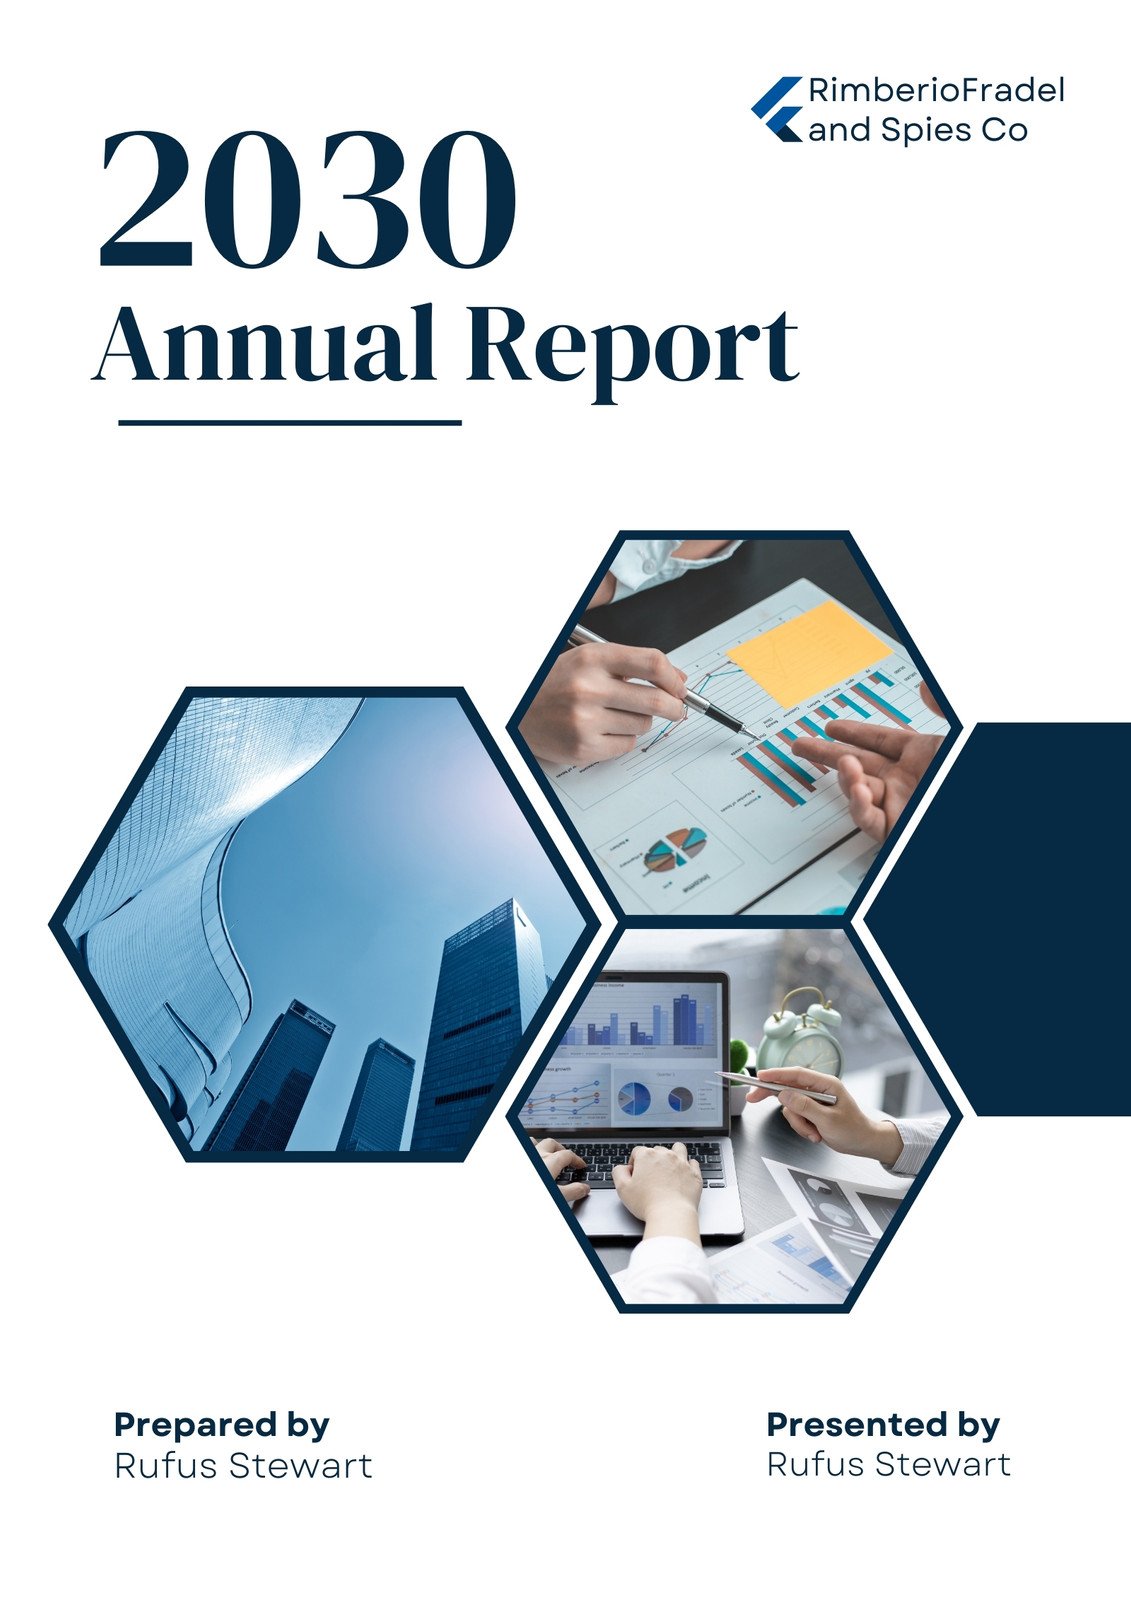 annual report cover design template